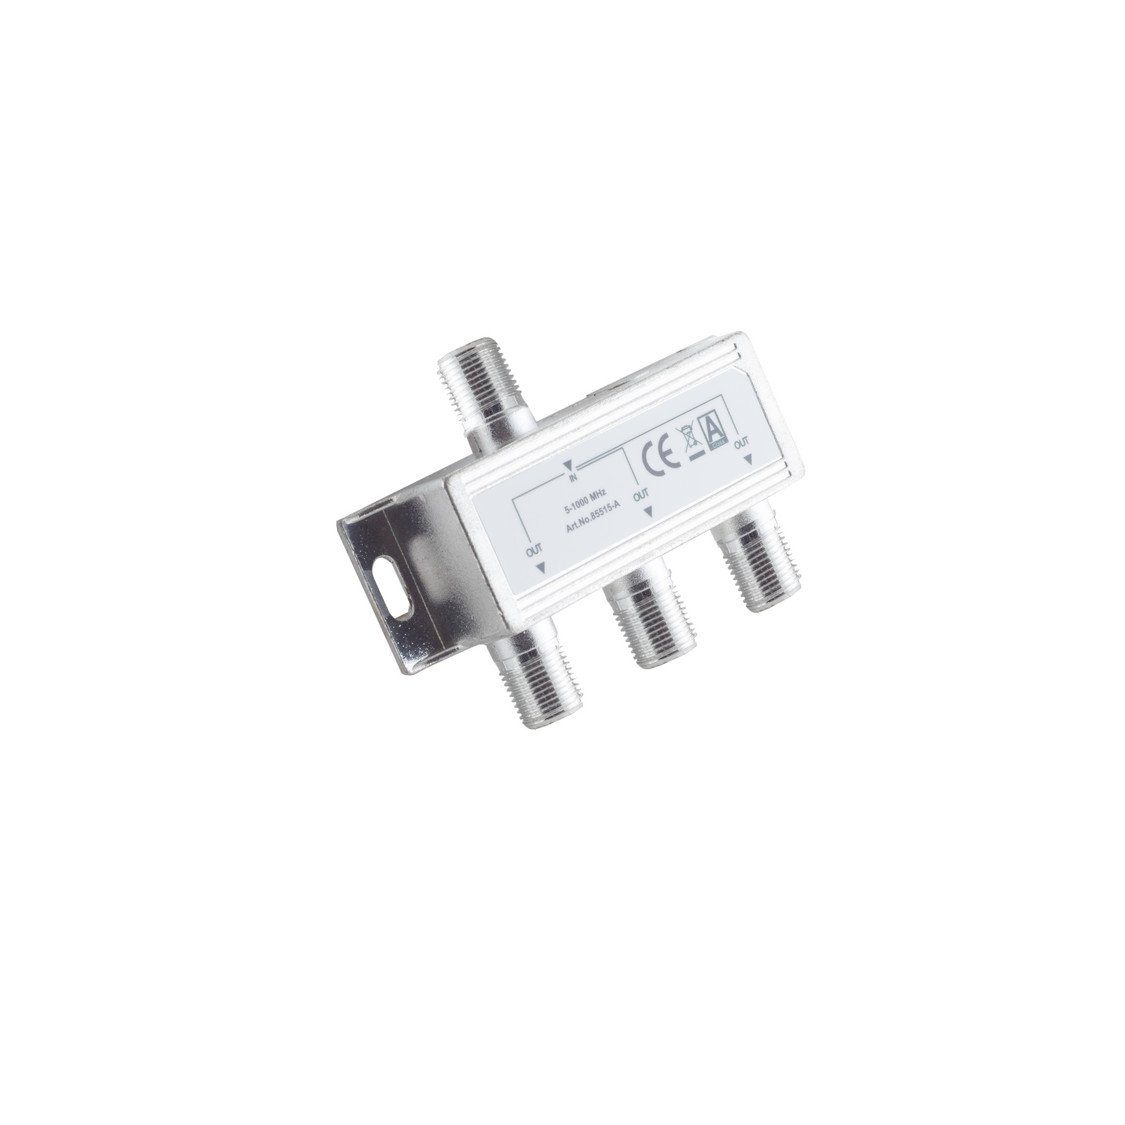 MHz, connectivity® S/CONN F-Serie; 3-fach; 85 5-1000 Koax-Kabelverbinder maximum Stammverteiler; dB